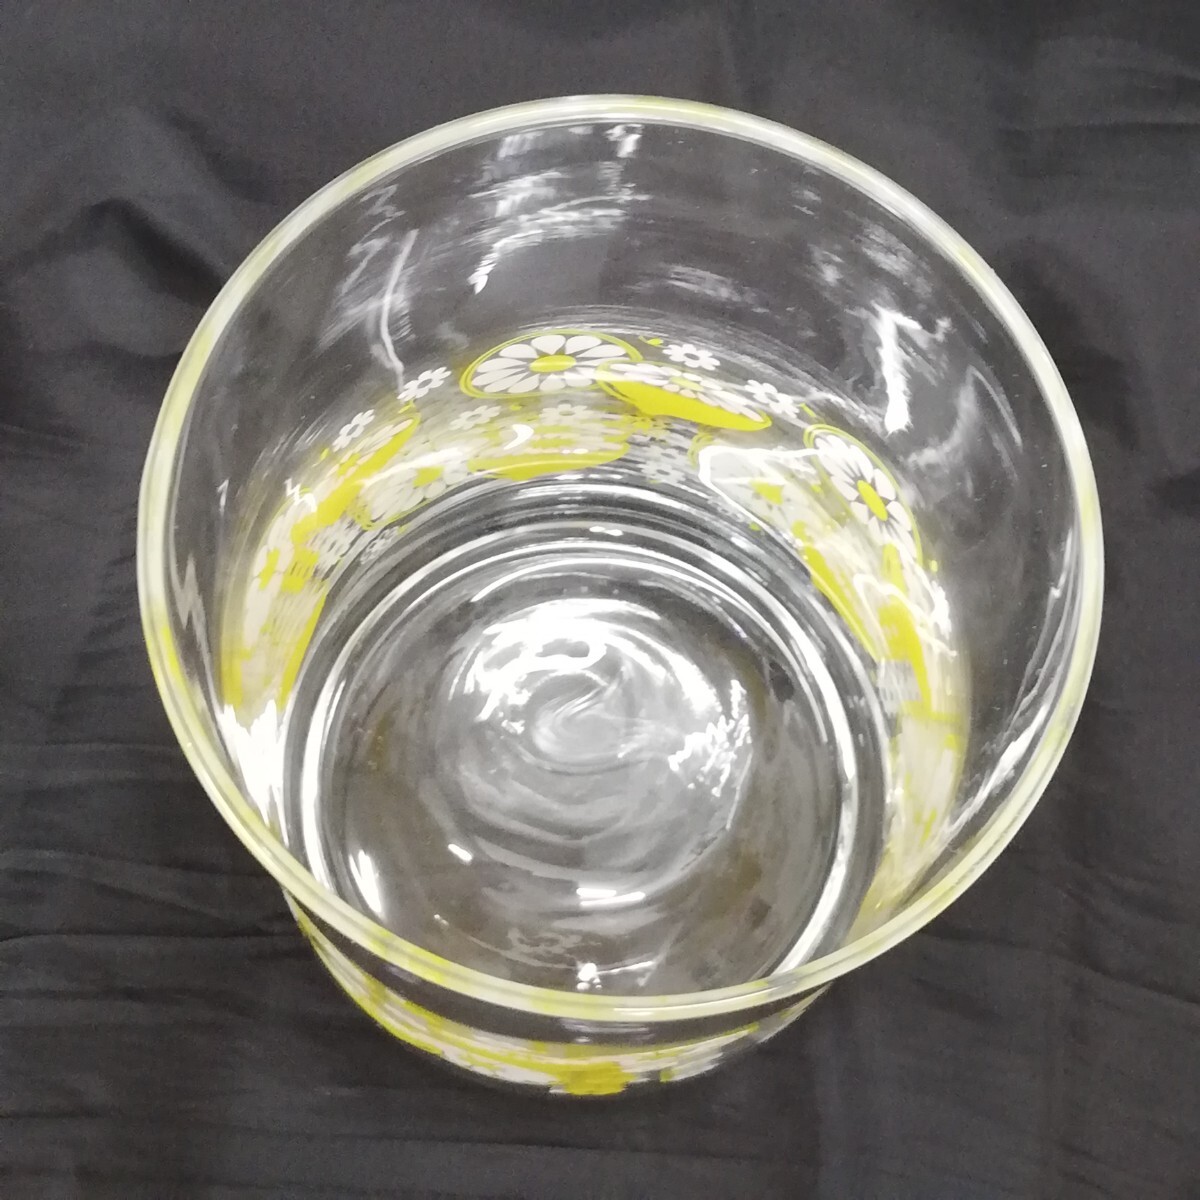 48 東洋佐々木ガラス レモン柄 デキャンタ グラス ガラス製 昭和レトロ レトロポップ 特大 タンブラー コップ ガラス 高さ約16cm 径約9.5cm_画像3